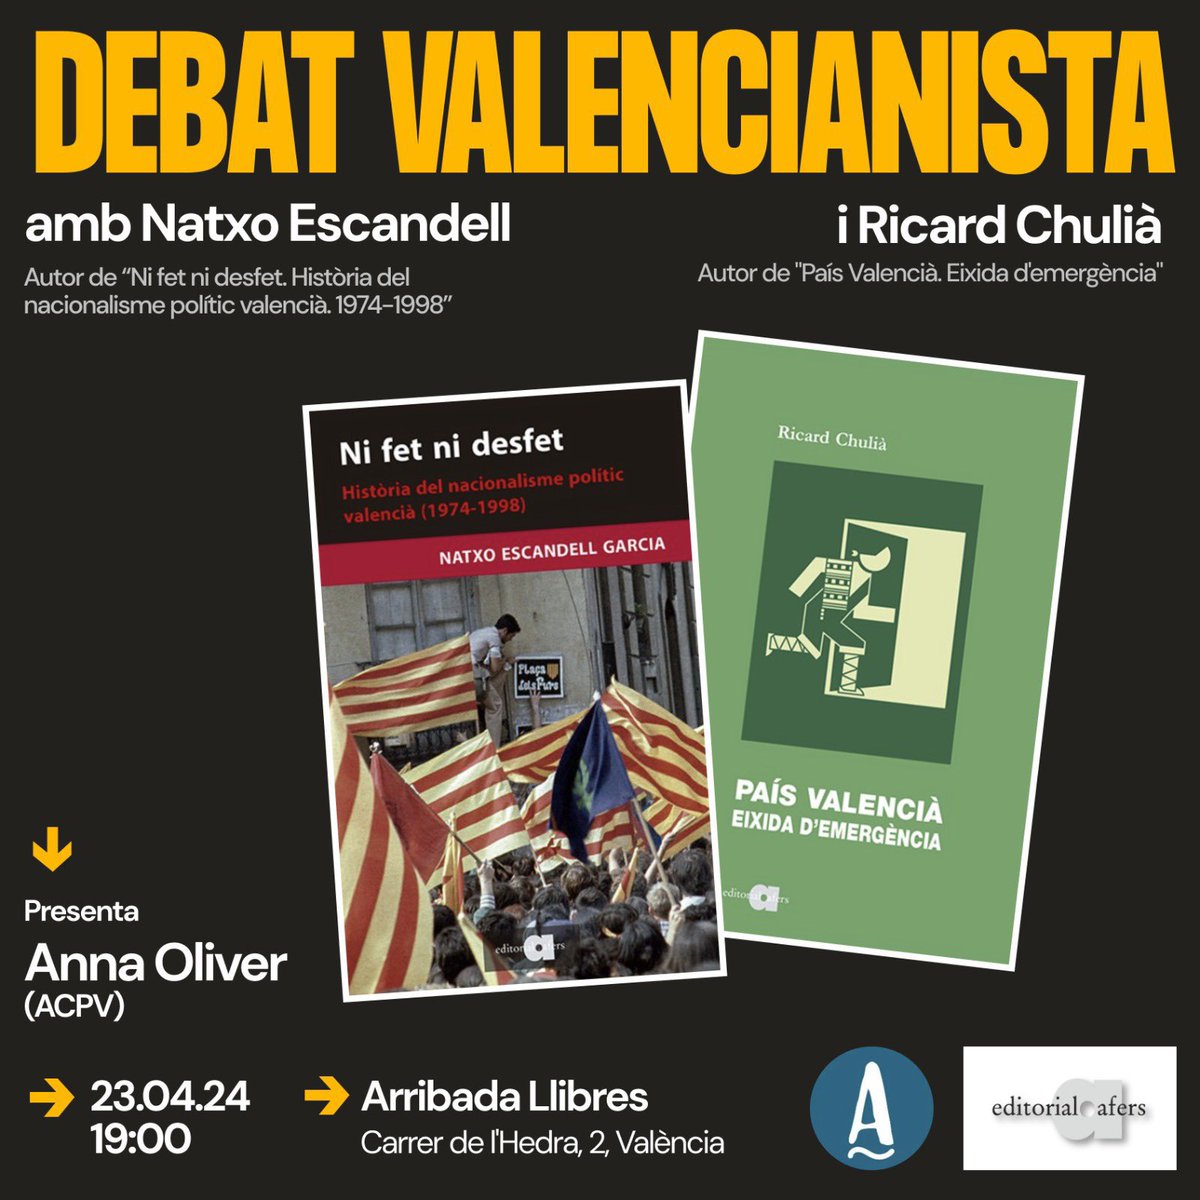 Demà dimarts a una de les millors llibreries de la ciutat de València: @ArribadaLlibres. Estarem @RicardChulia (@EmergenciaPV) i jo conversant amb @OBorrasAnna (@AccioCulturalPV) sobre els nostres llibres. Passat i futur del nacionalisme. A les 19h! Akelarreeeee!